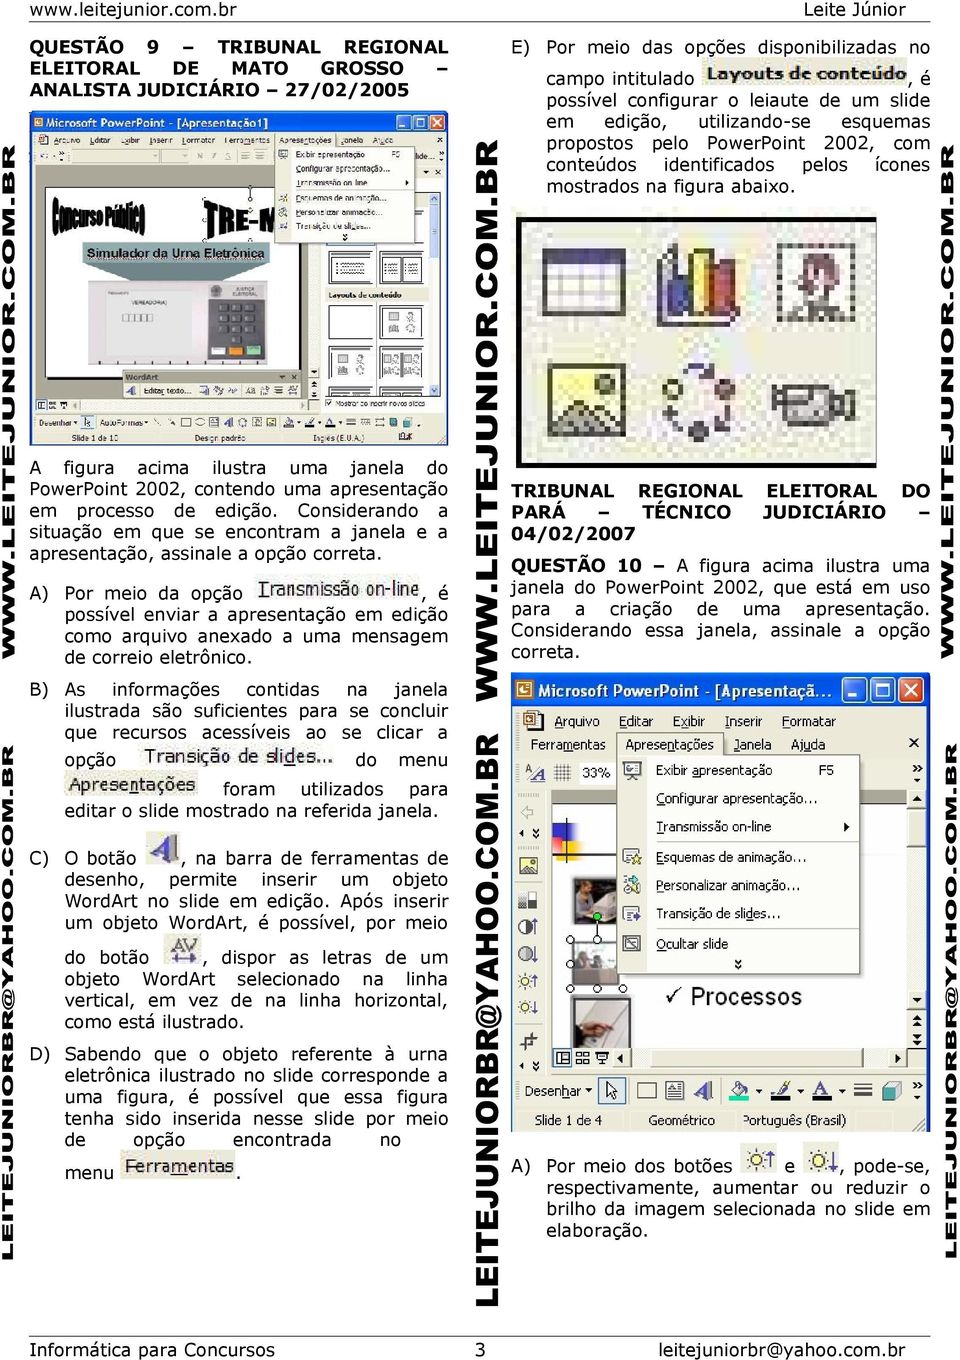 A figura acima ilustra uma janela do PowerPoint 2002, contendo uma apresentação em processo de edição. Considerando a situação em que se encontram a janela e a apresentação, assinale a opção correta.